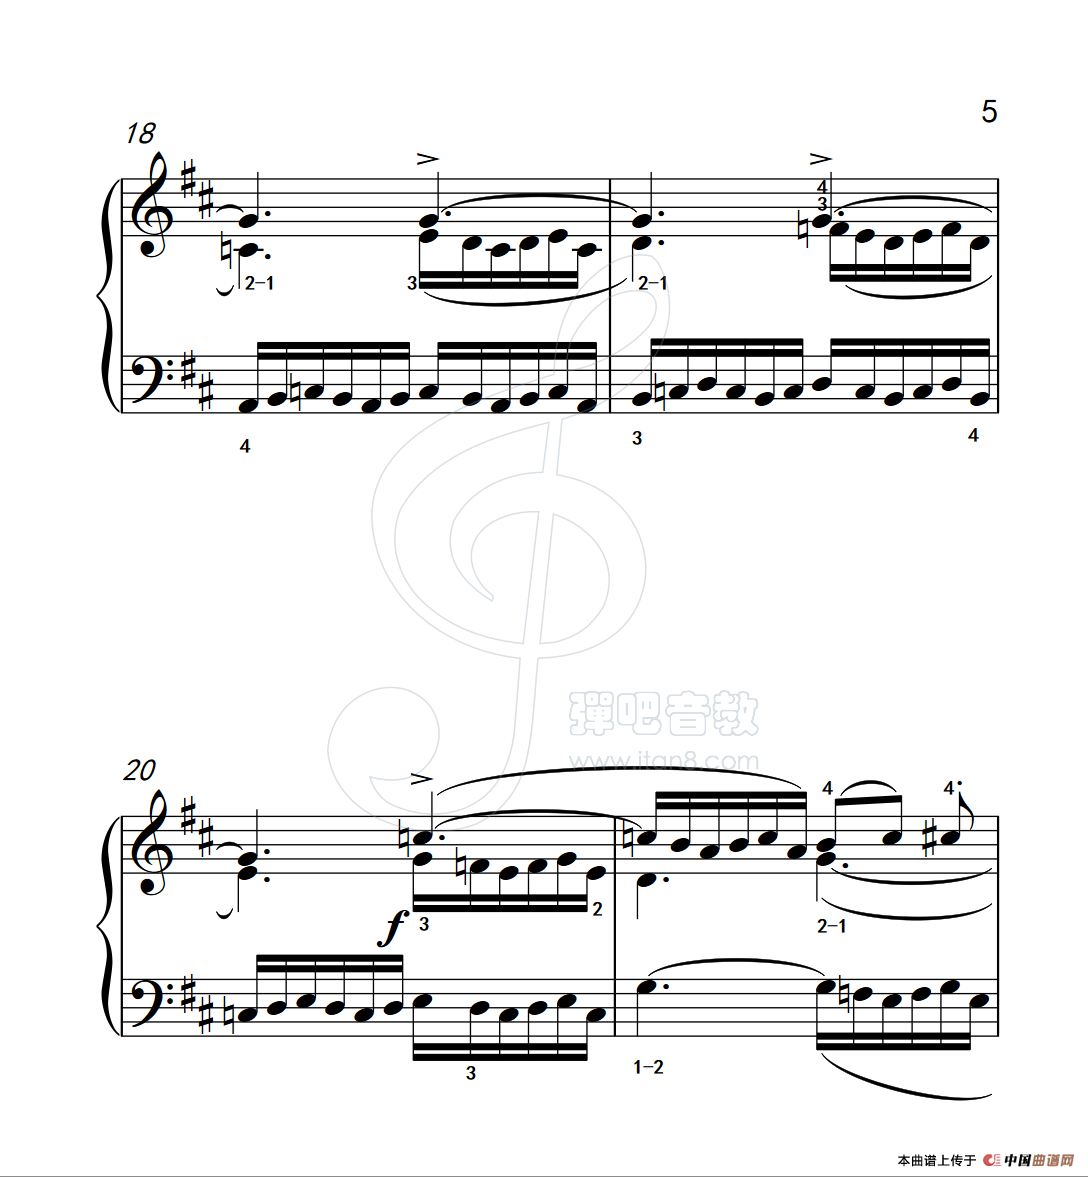 《练习曲 16》钢琴曲谱图分享